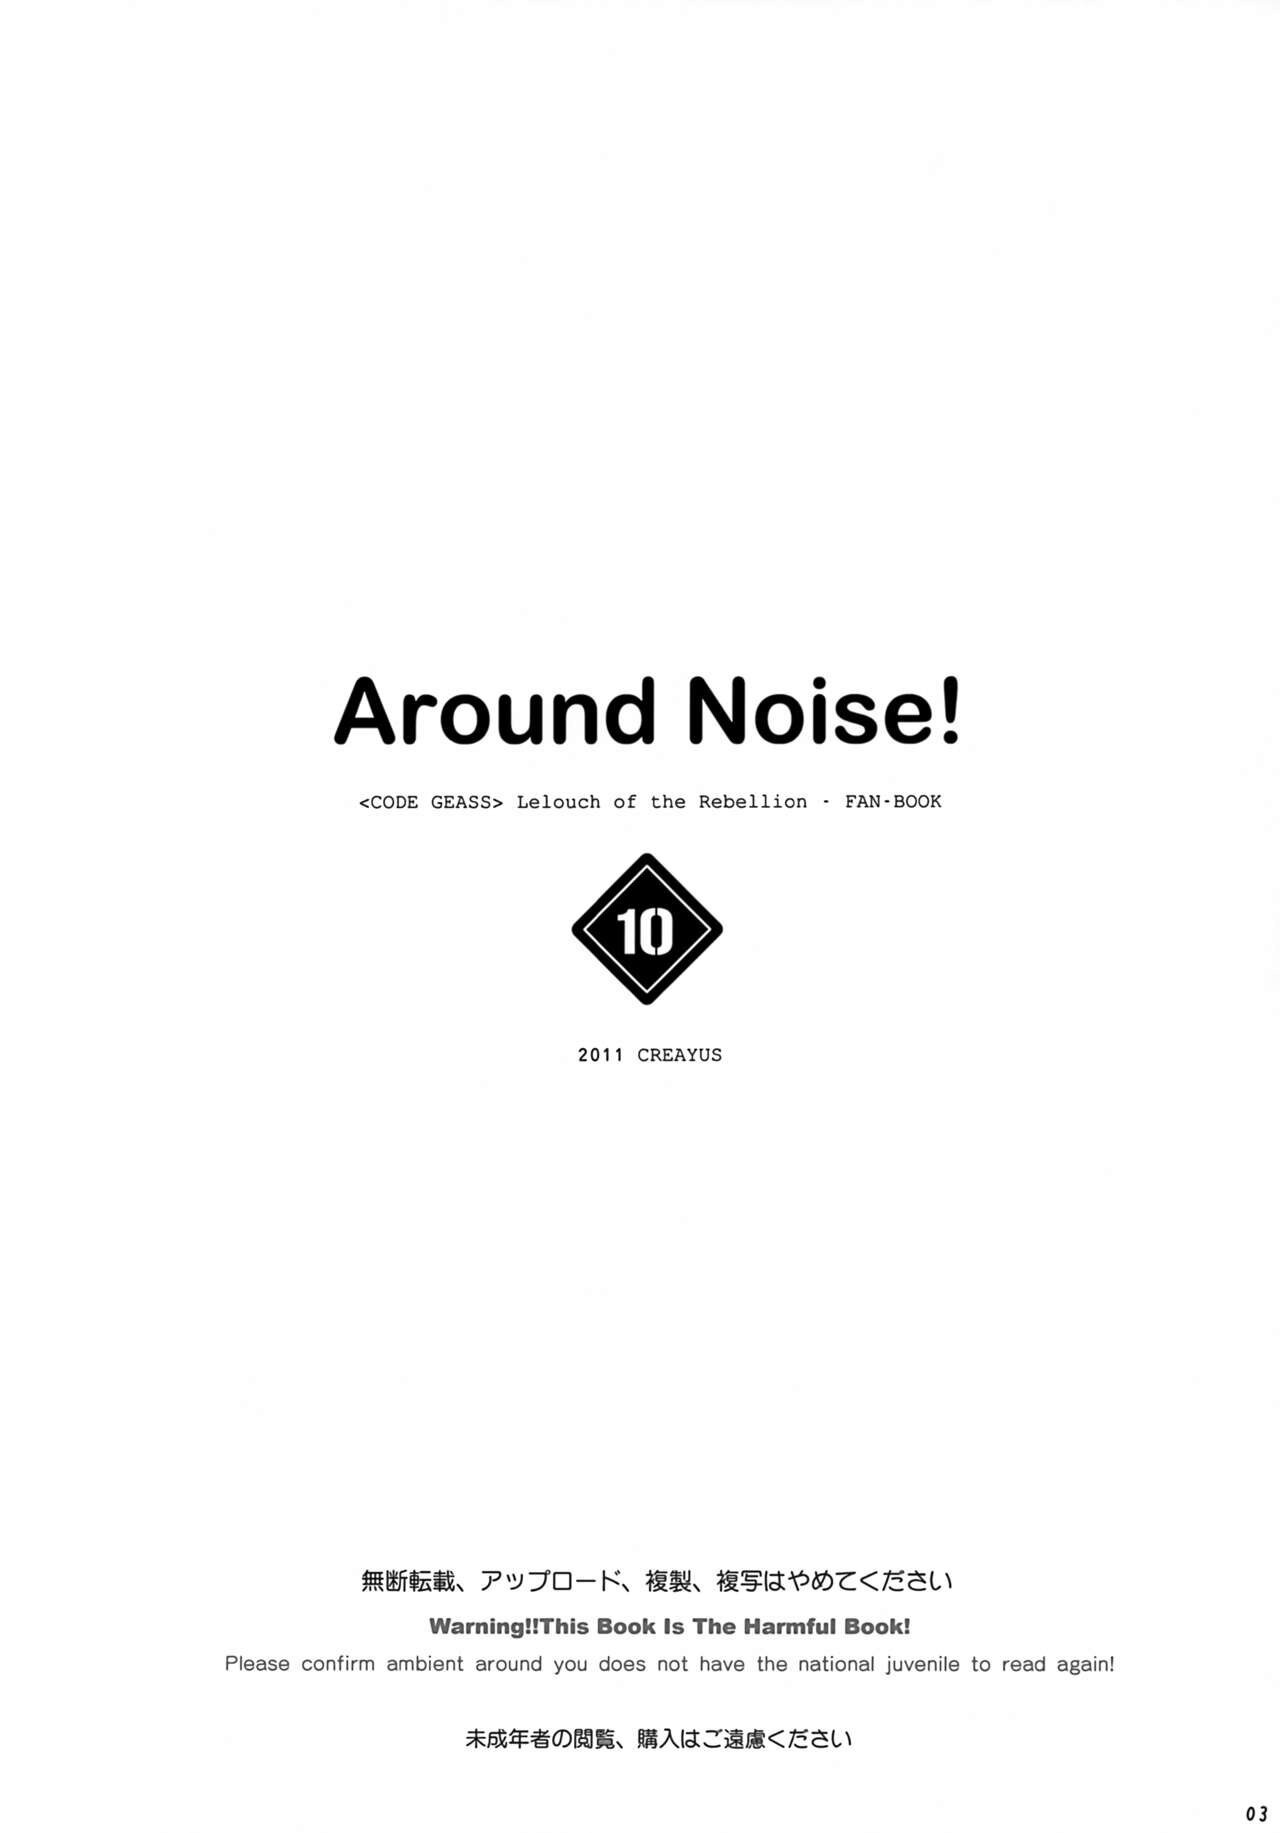 AROUND NOISE - 3